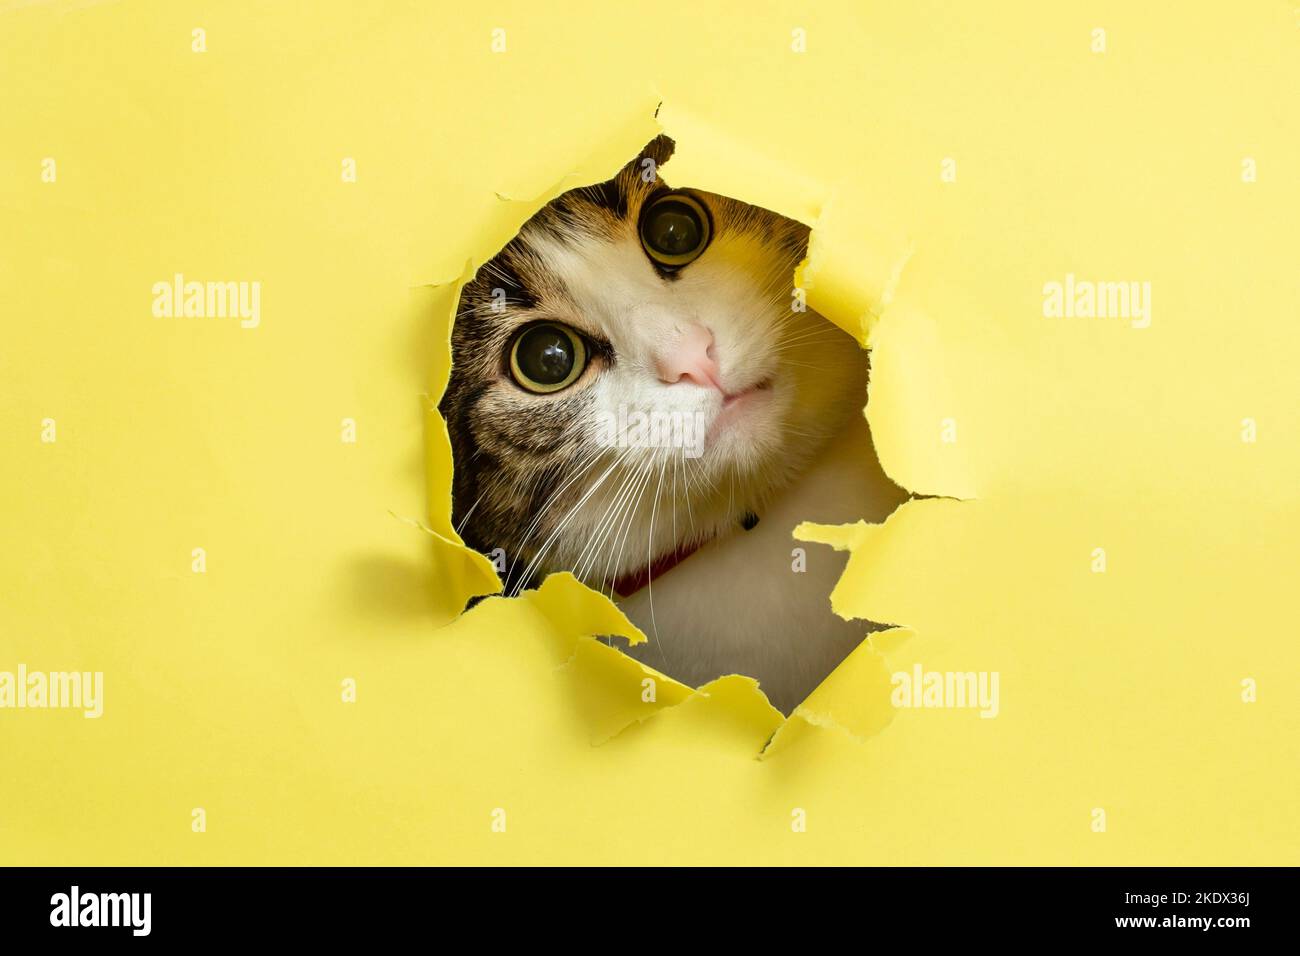 Niedliche Katze mit gekipptem Kopf, die durch ein geripptes Loch in gelbem Karton schaut oder ihren Höhepunkt erreicht Stockfoto